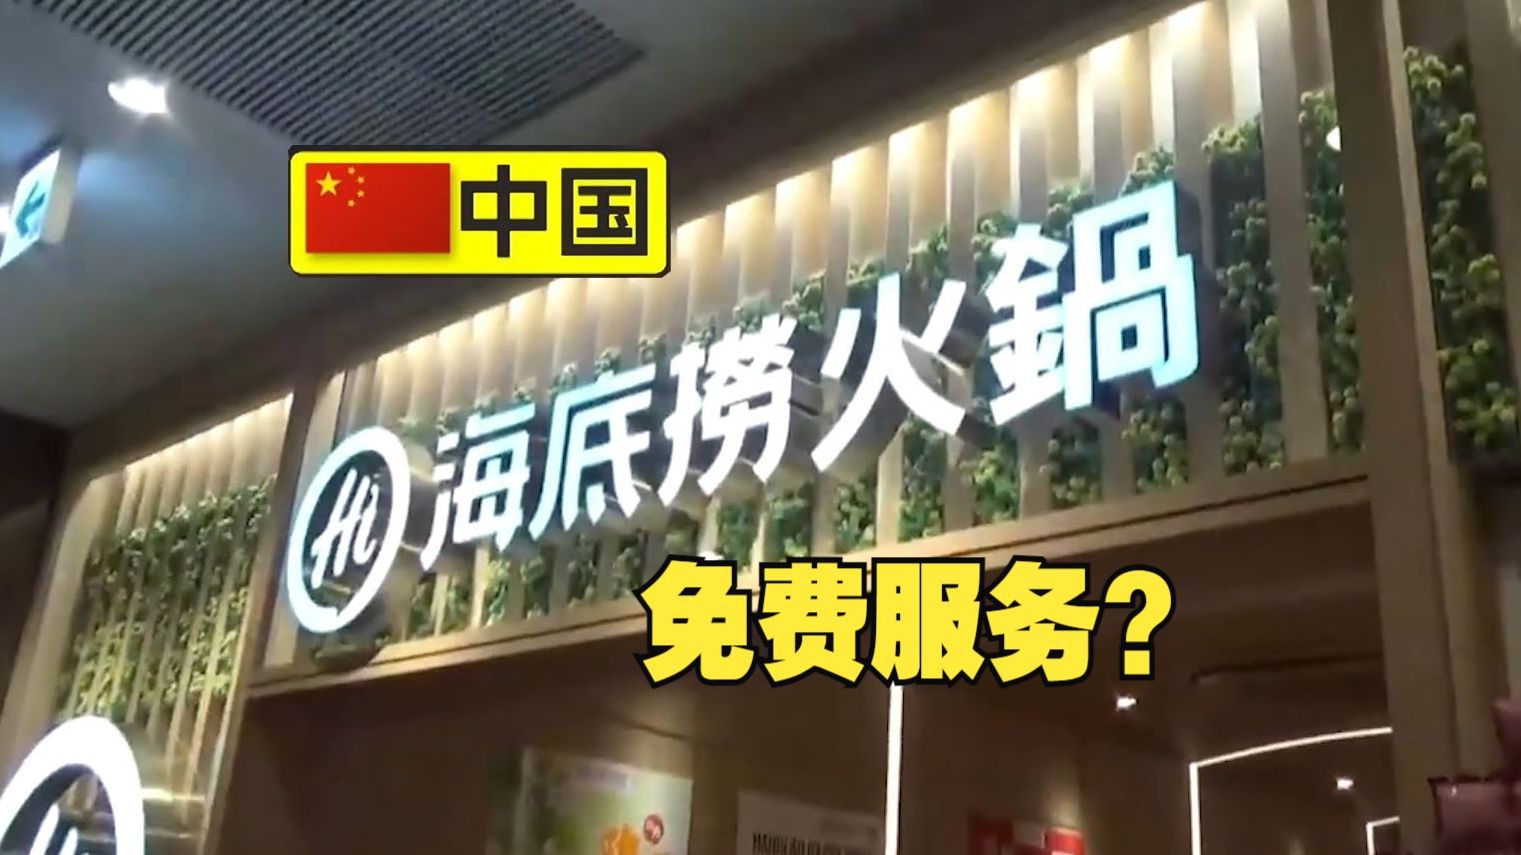 东京的中国海底捞火锅让日本记者开了眼了:这都能免费吗?